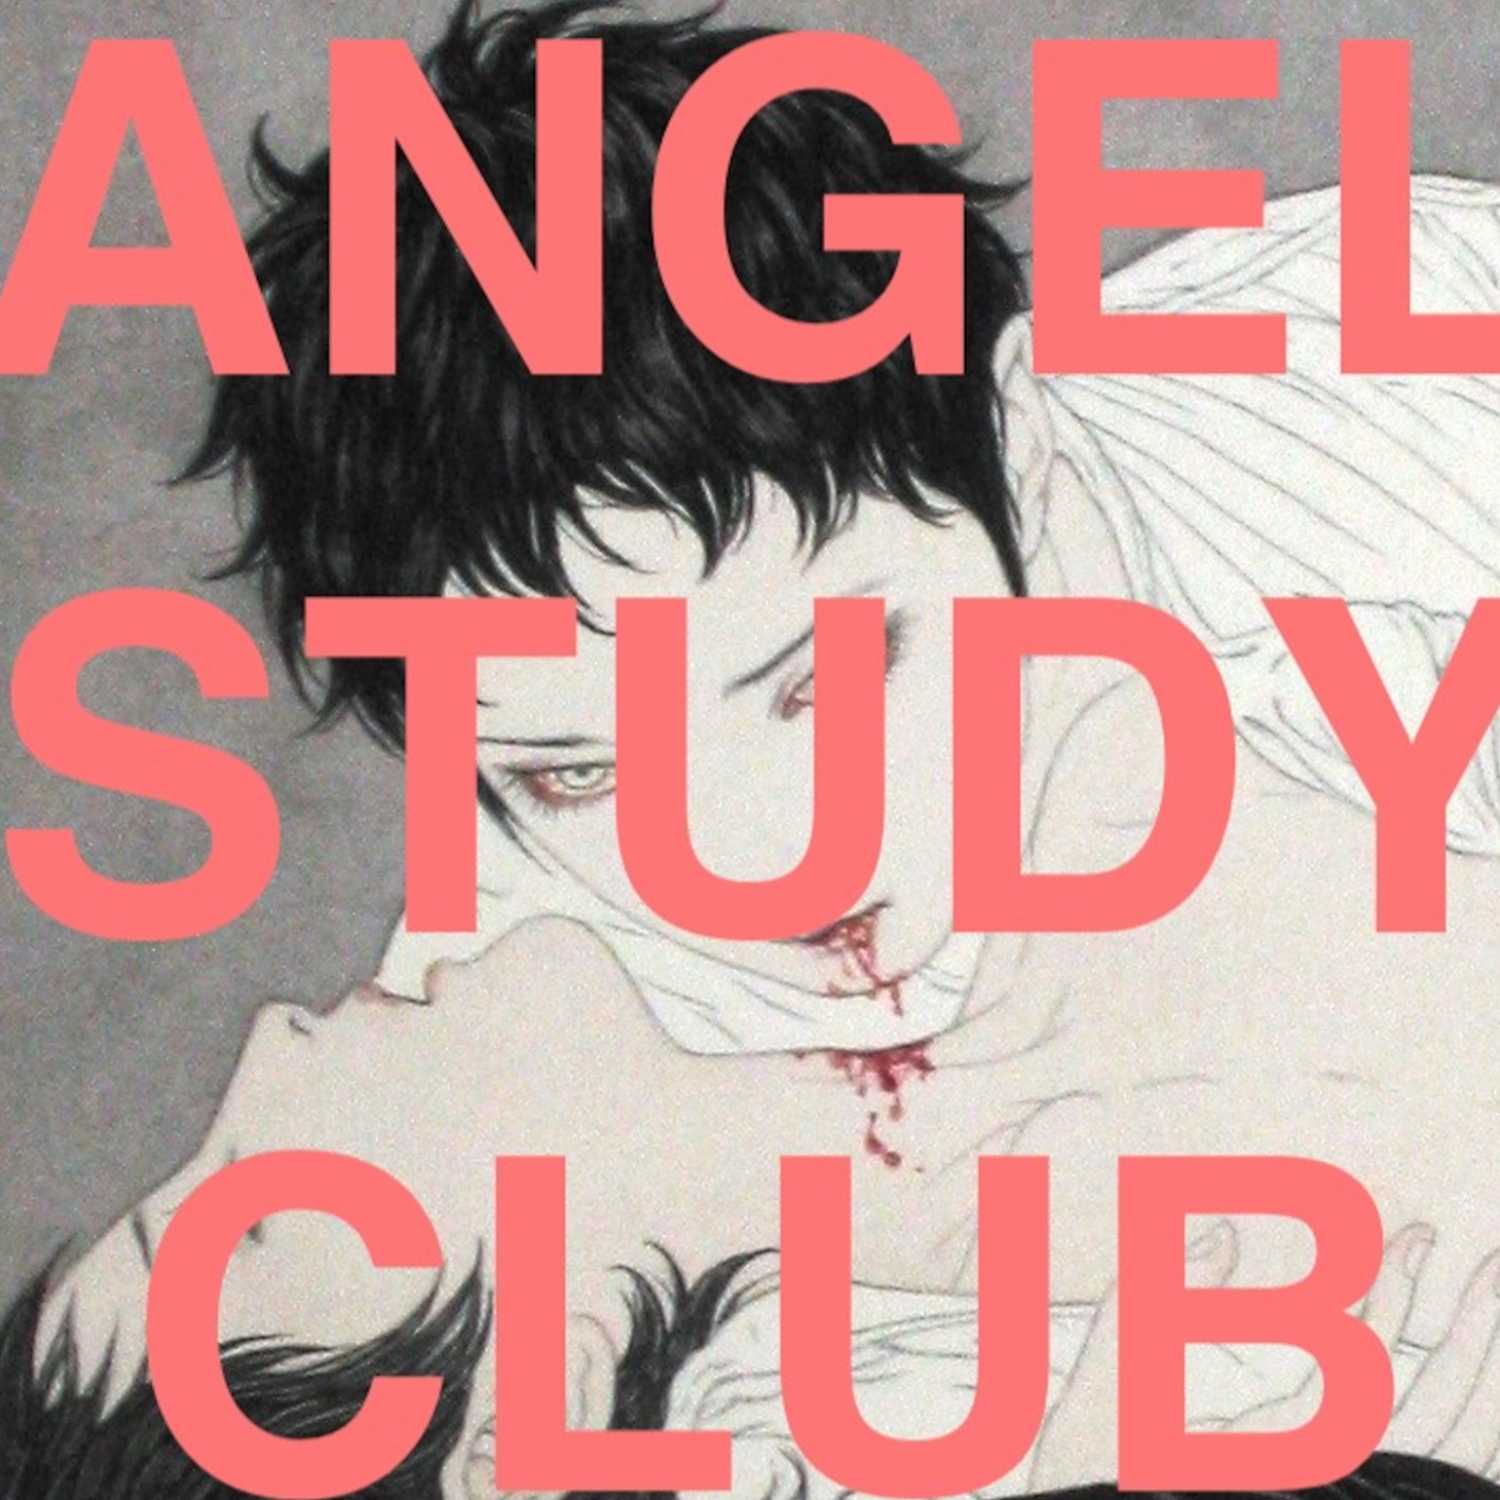 Angel Study Club